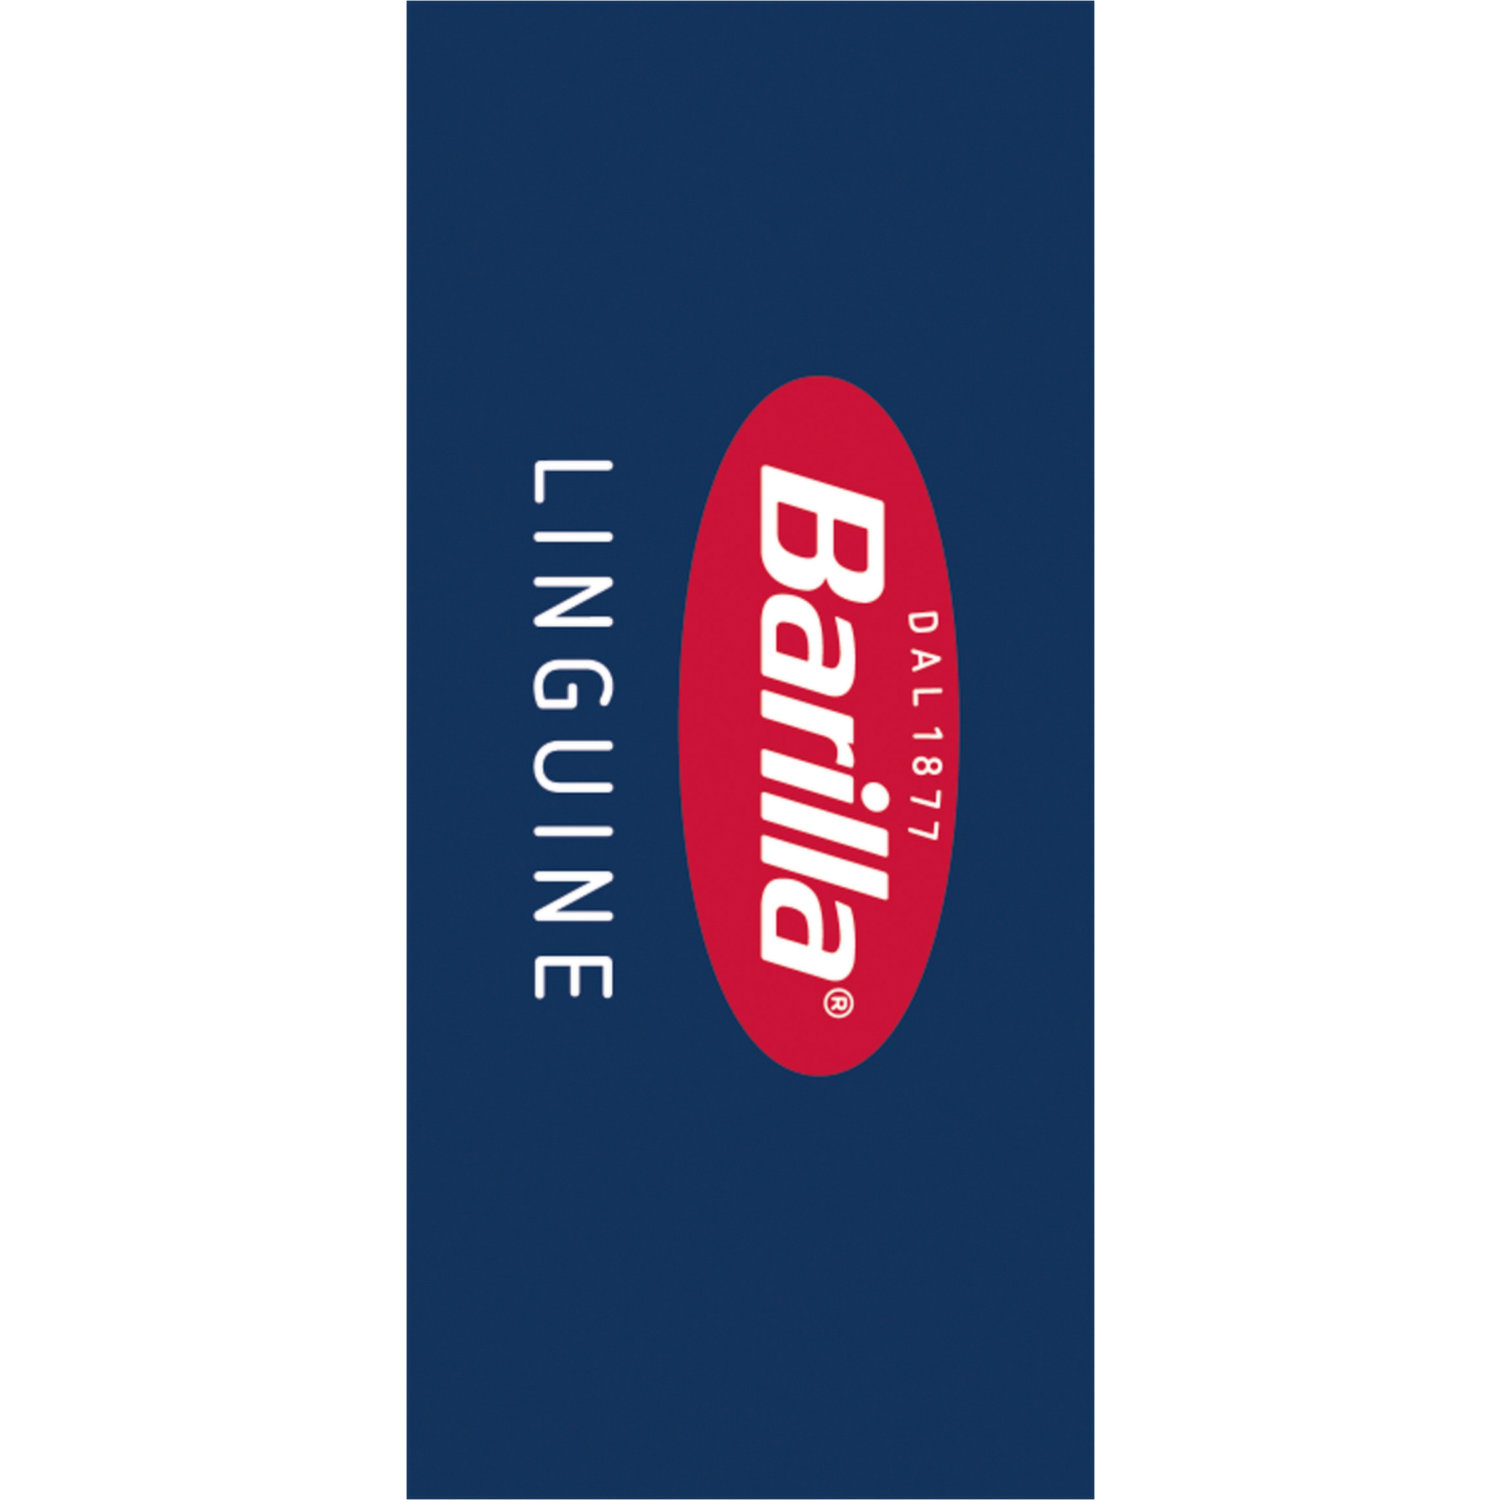 Barilla Pâtes Lingune - 410 g